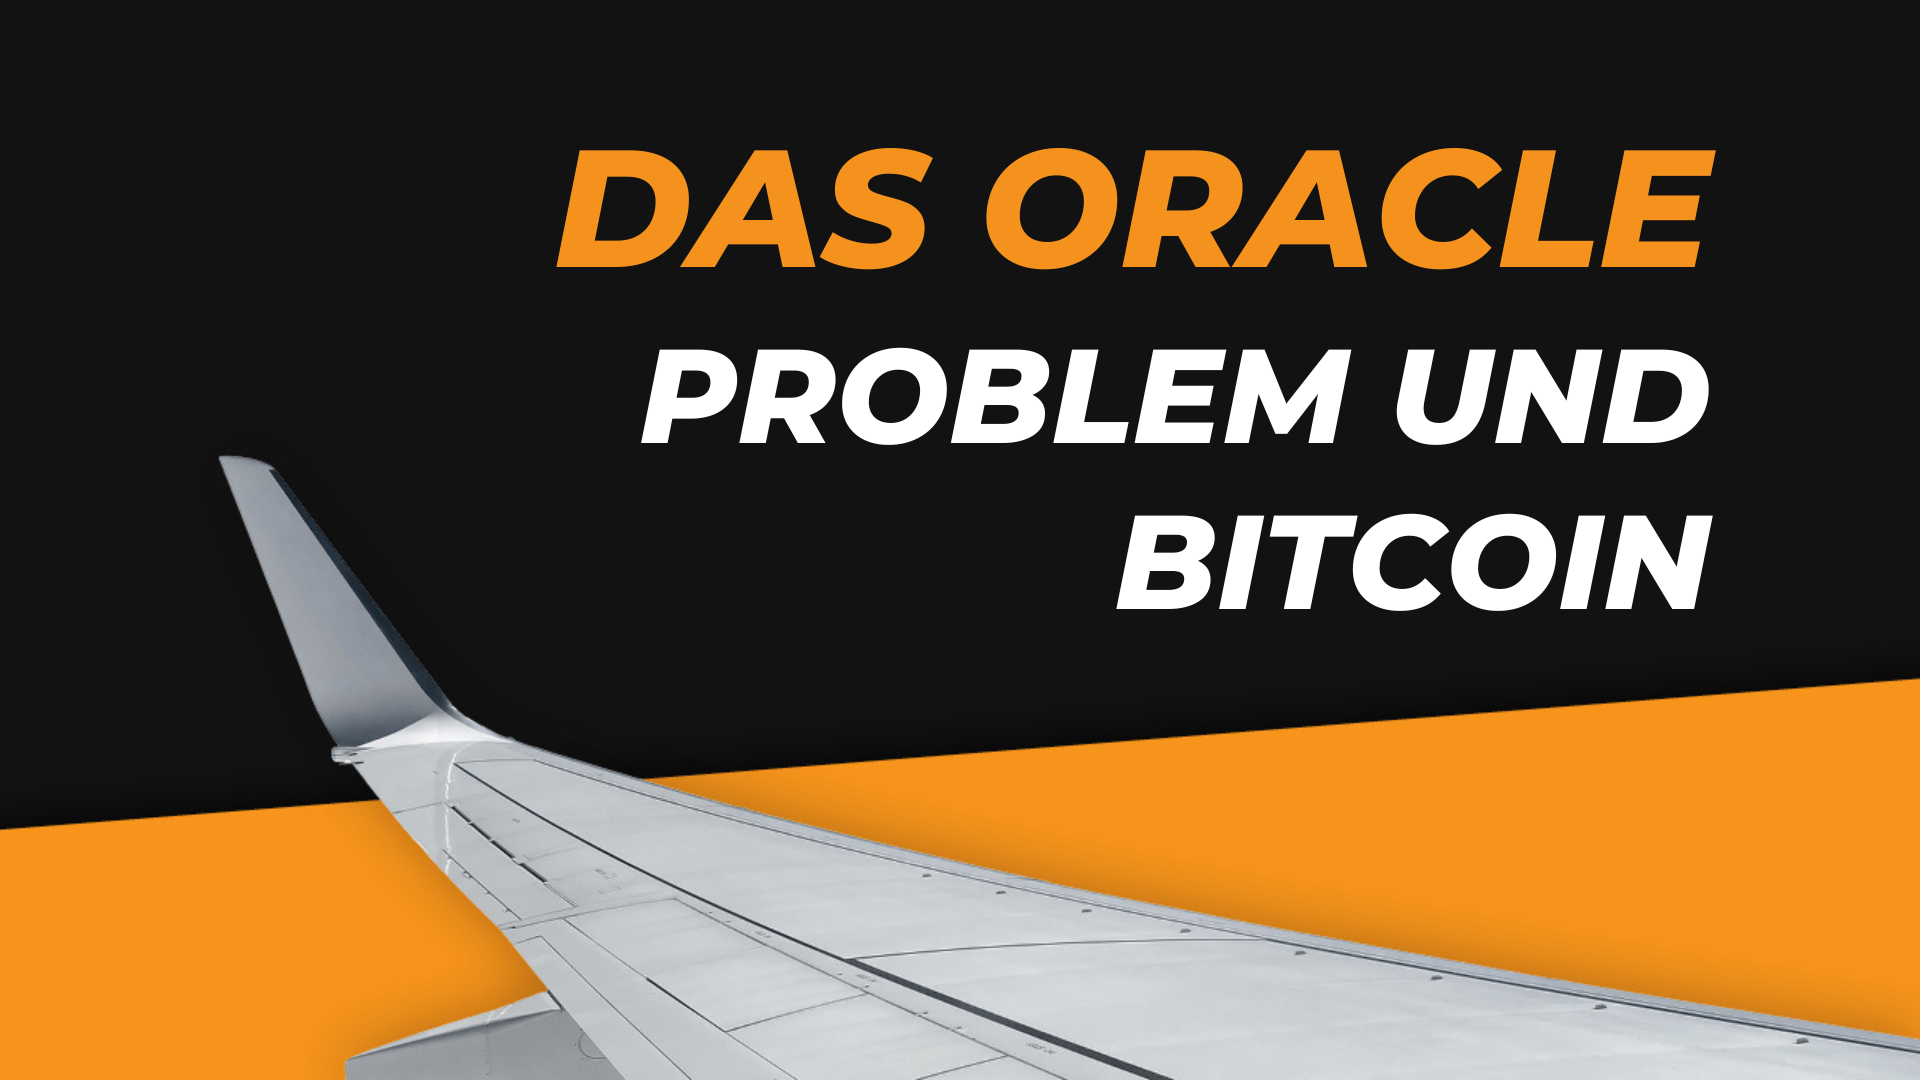 Das Oracle Problem – Wurde das Problem im Bitcoin Netzwerk gelöst?